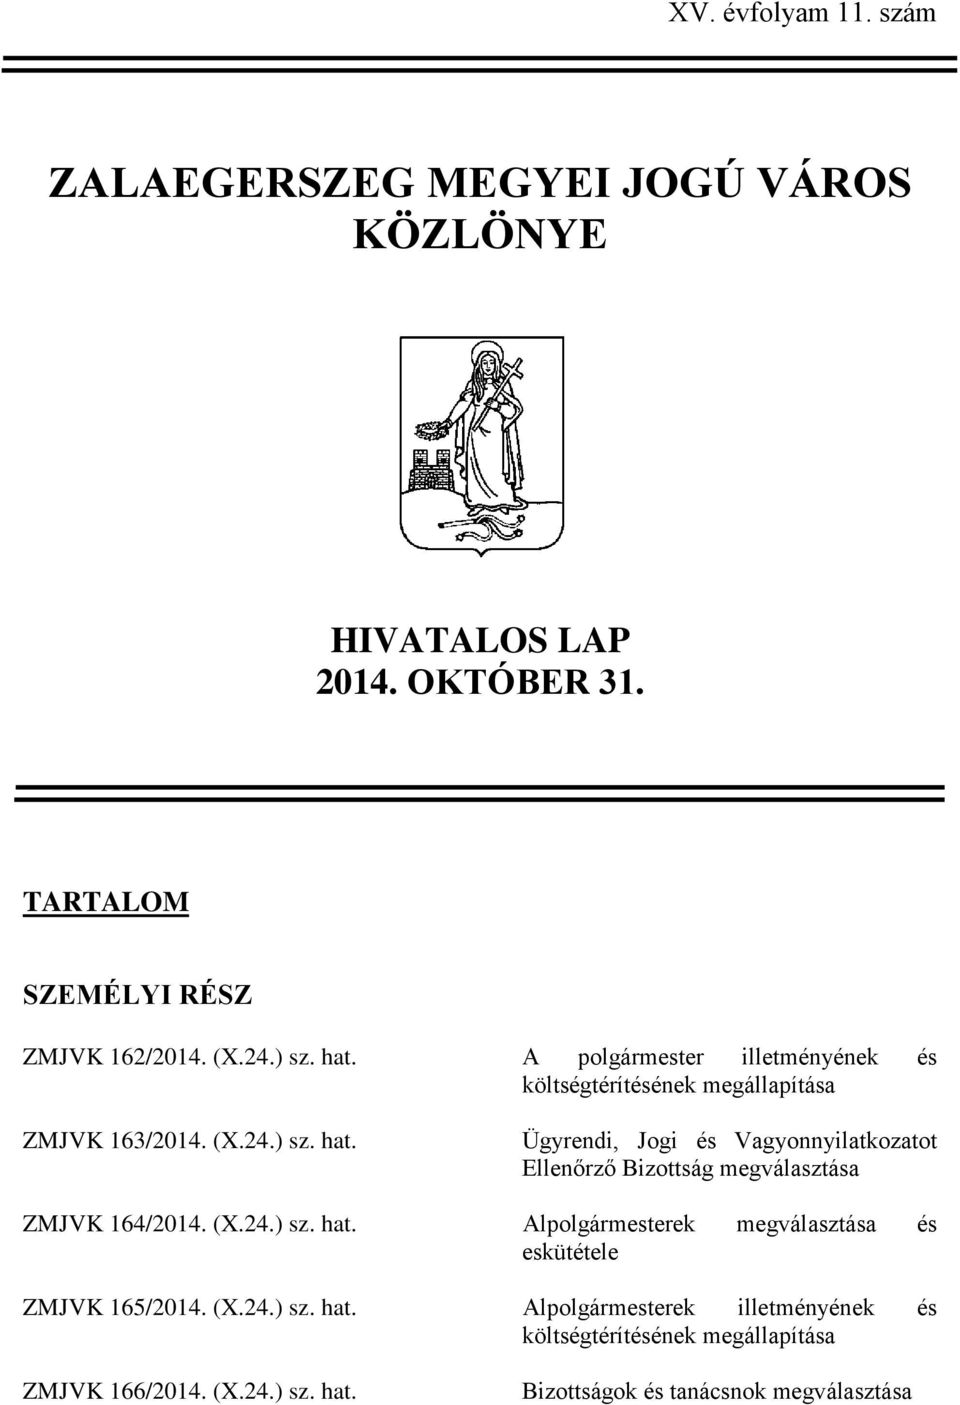 (X.24.) sz. hat. Alpolgármesterek megválasztása és eskütétele ZMJVK 165/2014. (X.24.) sz. hat. Alpolgármesterek illetményének és költségtérítésének megállapítása ZMJVK 166/2014.